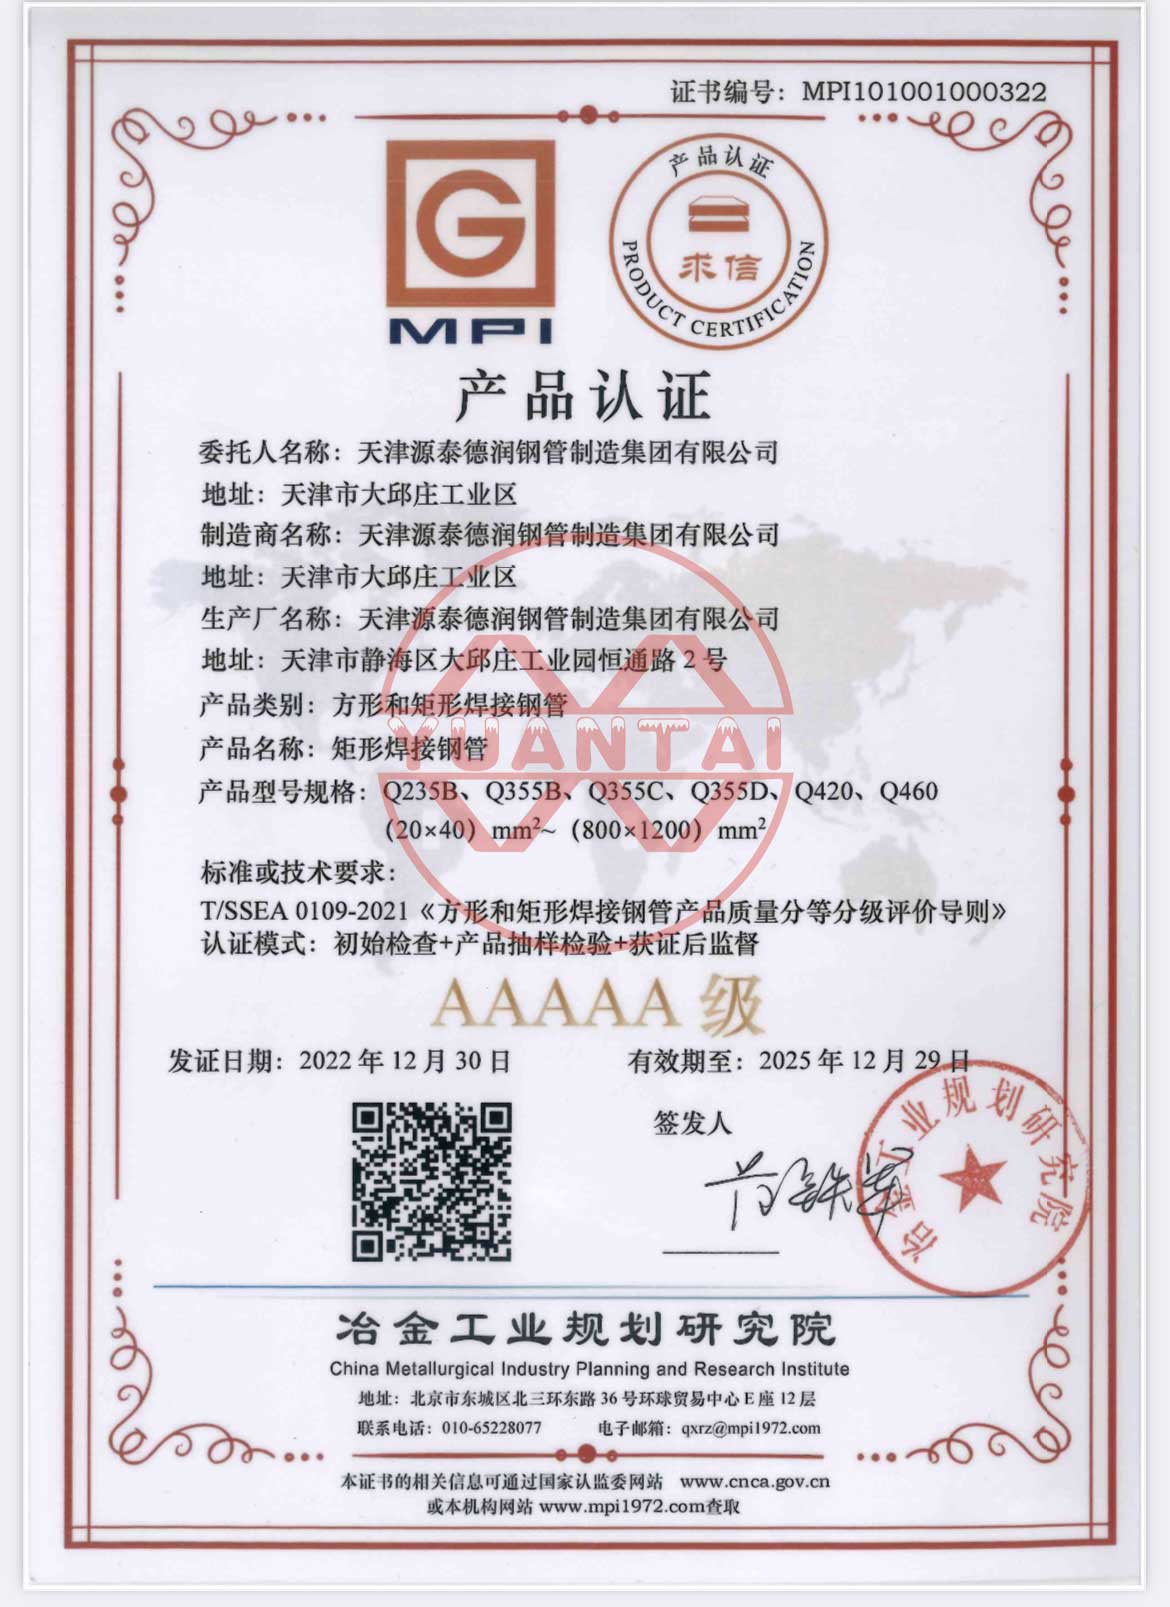 La kvadrataj kaj rektangulaj velditaj ŝtalaj tuboj de Tianjin Yuantai Derun Group estis premiitaj AAAAA-produkta atestilo fare de la Instituto de Metalurgia Industria Planado.